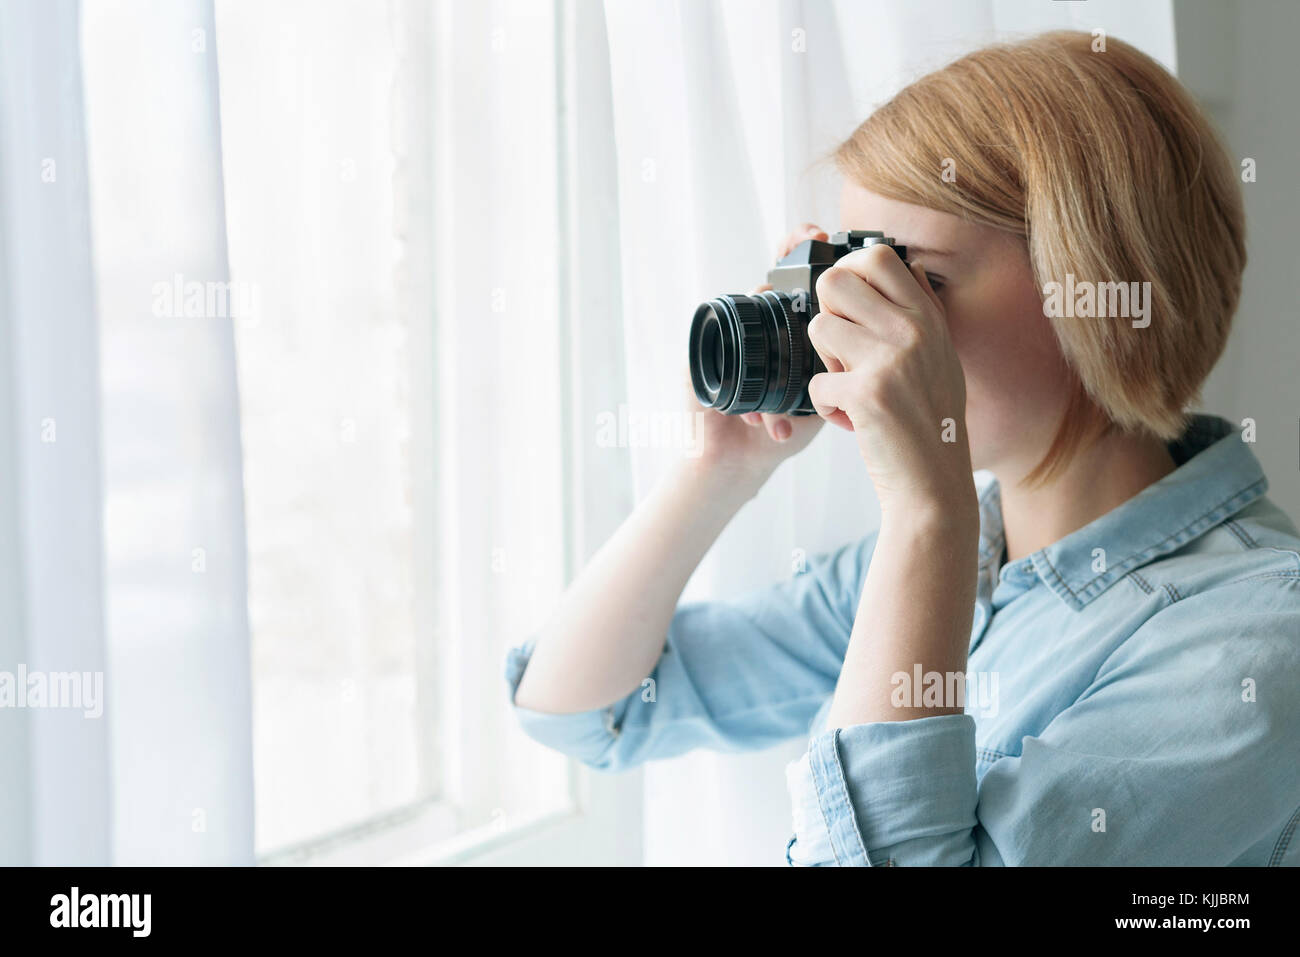 Woman taking photos through the window curtains Stock Photo